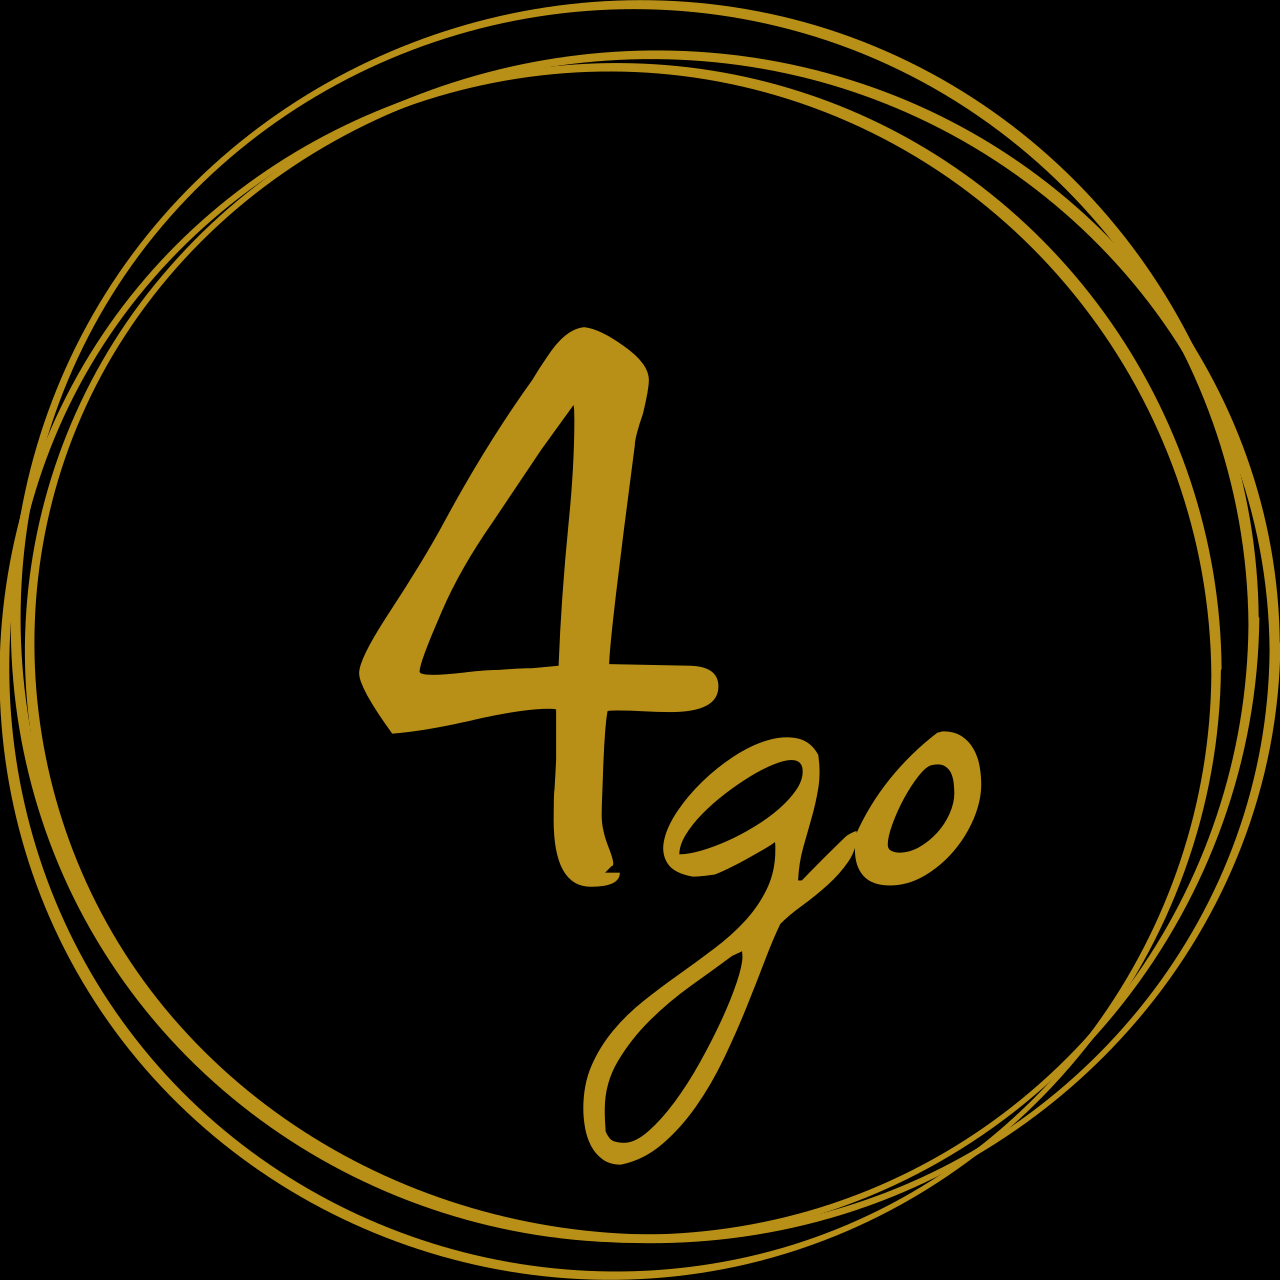 4go's logo